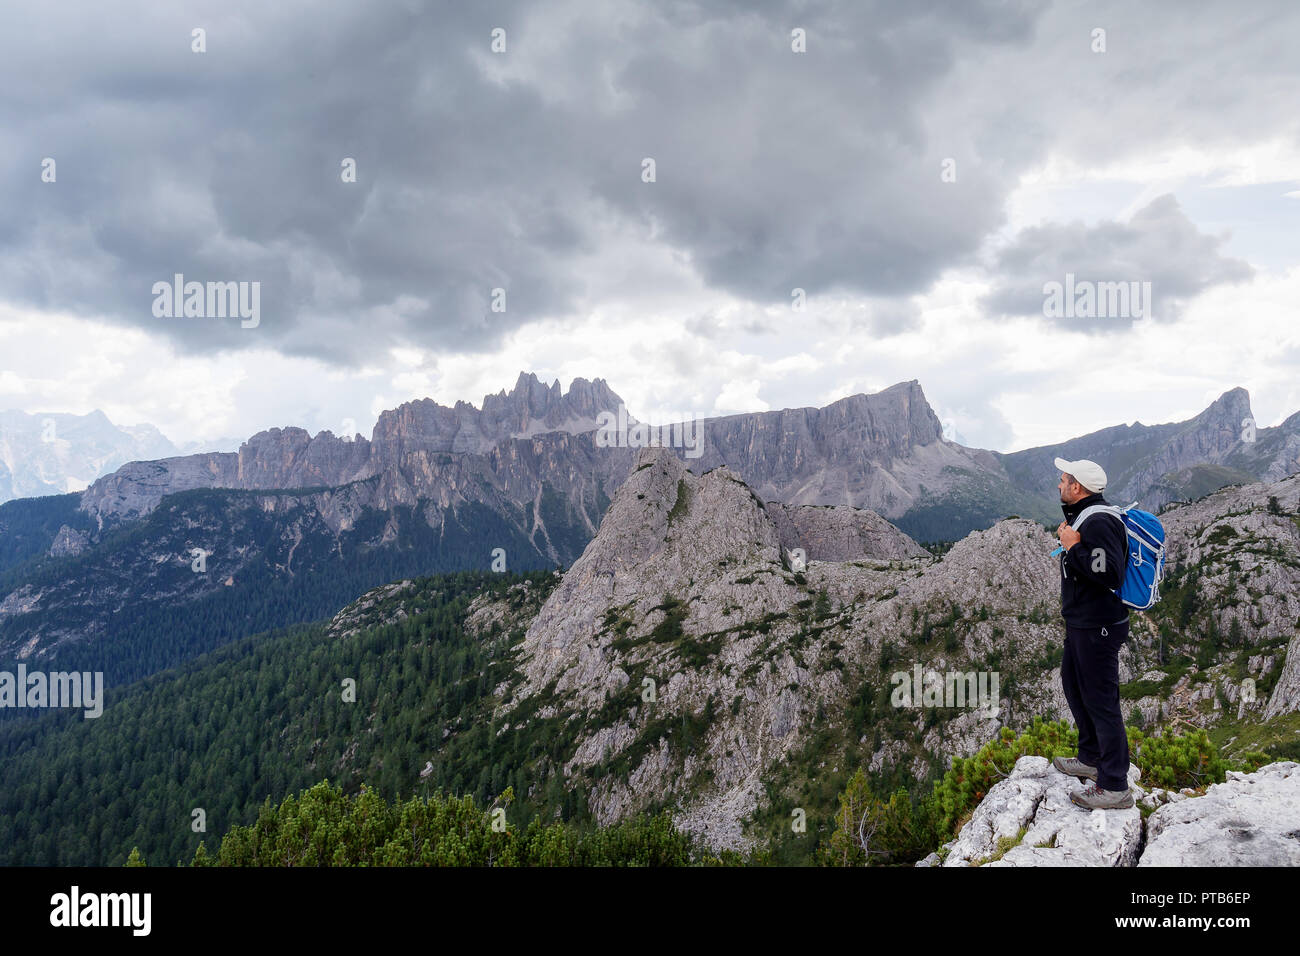 In der wunderschönen alpinen Landschaft eingebettet, ein Mann bewundert die hochalpine Landschaft mit Bergen und bewölktem Himmel. Stockfoto